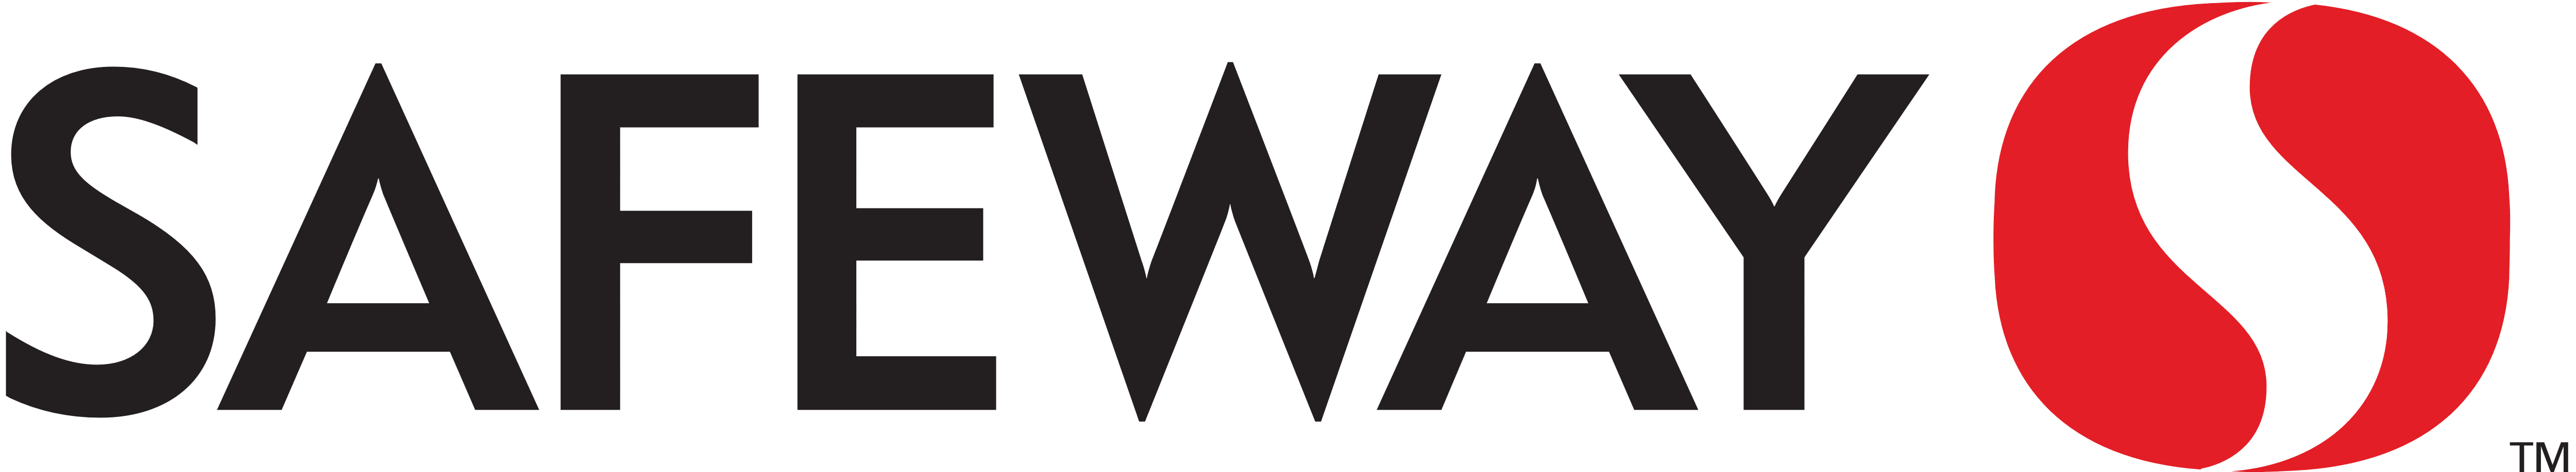 Safeway – Logos Download